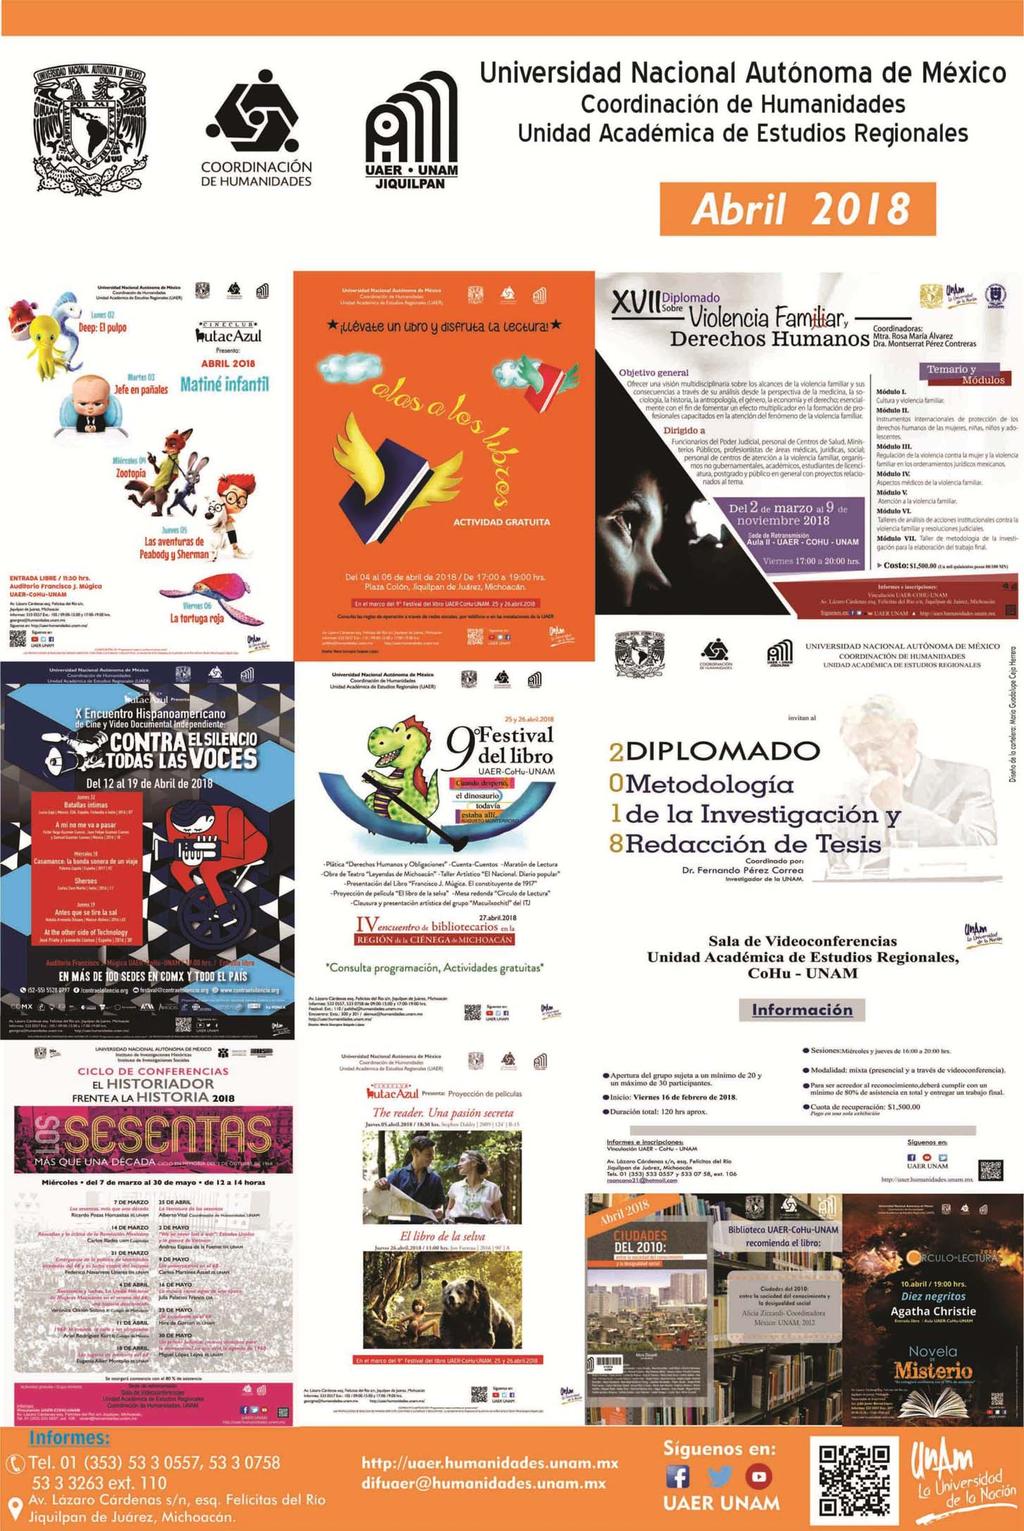 UNIVERSIDAD NACIONAL AUTÓNOMA DE MÉXICO invitan a las actividades académicas y culturales para Abril 2018 Consulta la programación!